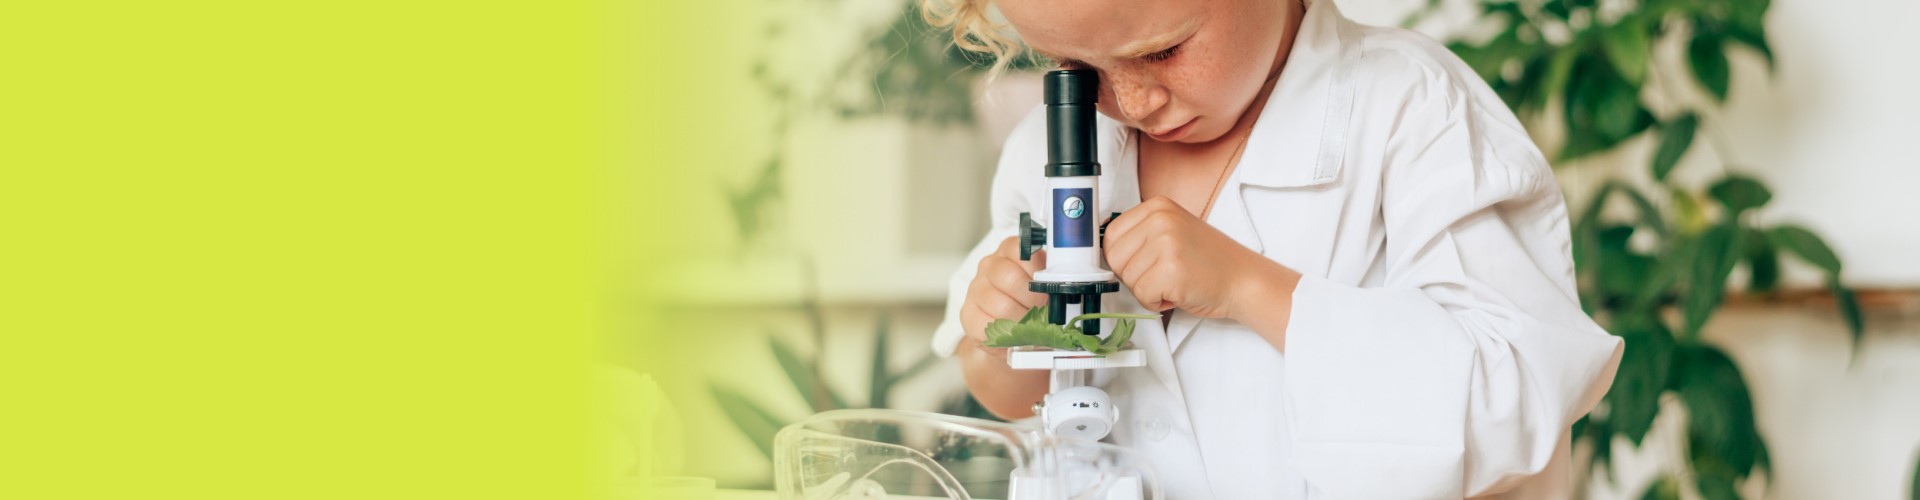 Niño mirando microscopio